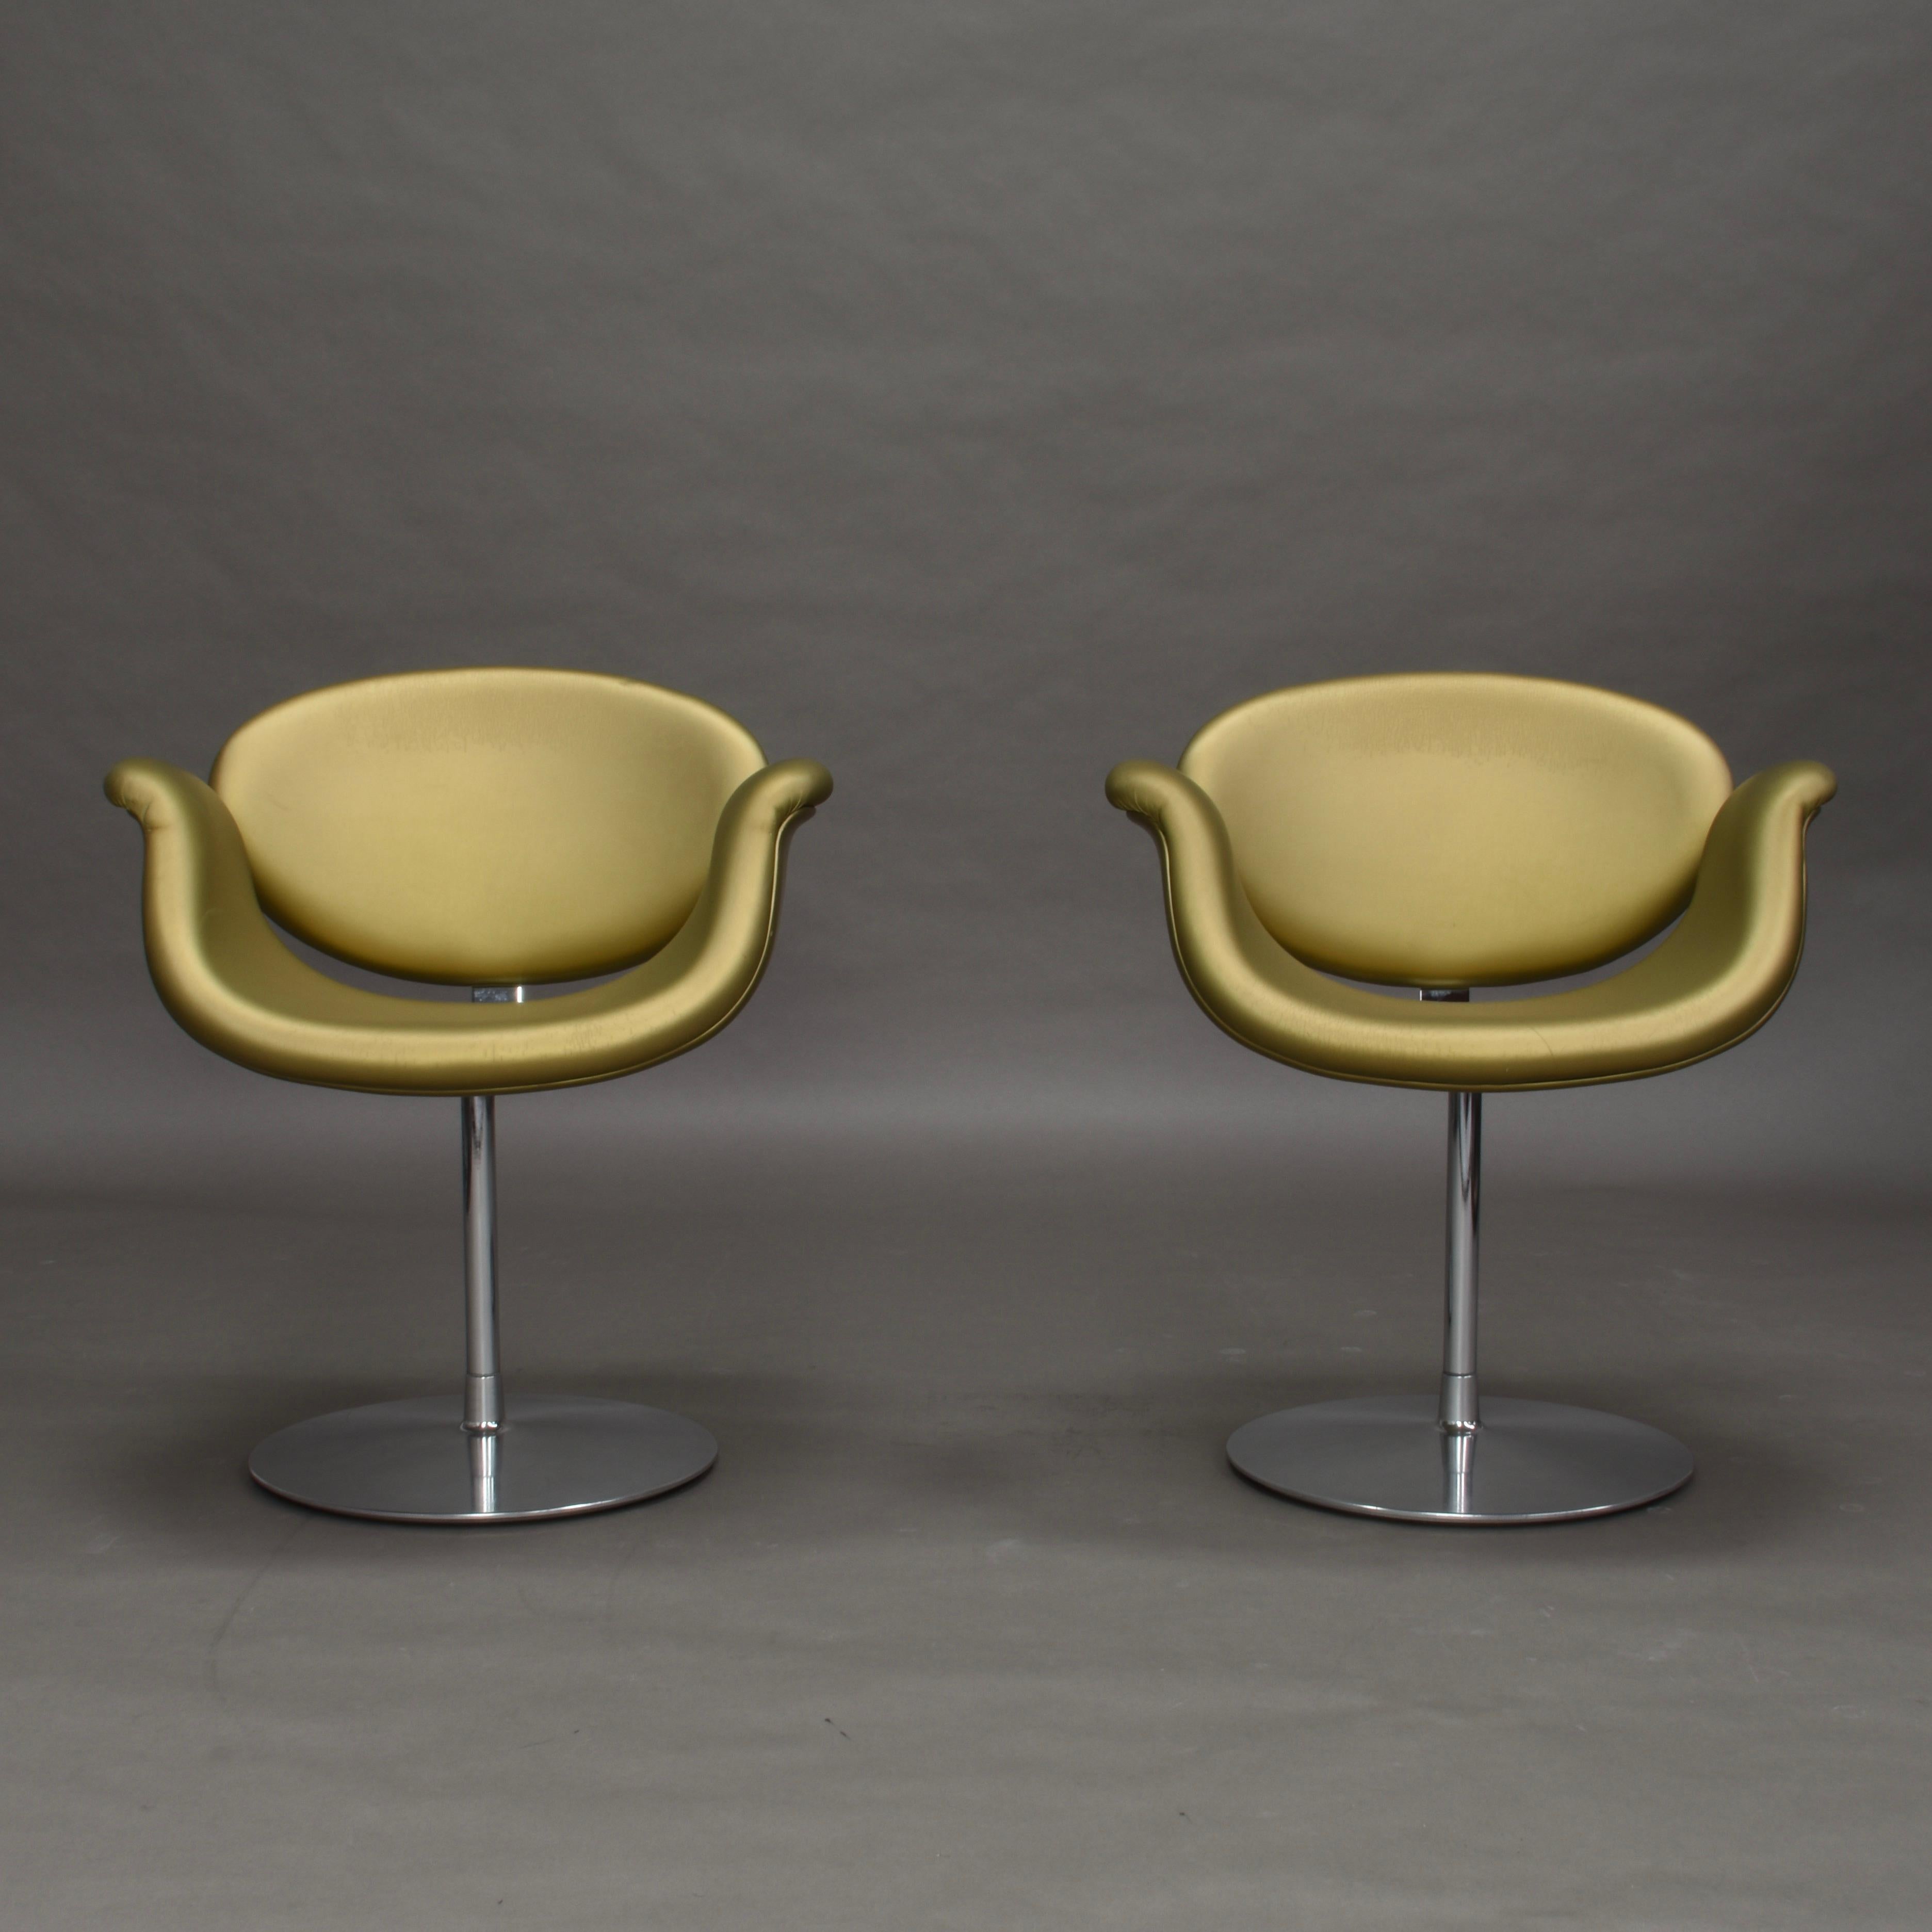 Paire de chaises pivotantes Little Tulip en édition limitée par Pierre Paulin pour Artifort, Pays-Bas, 1965.

Les chaises sont produites en édition limitée en similicuir doré. La base pivotante est en métal chromé. Le simili-cuir présente une